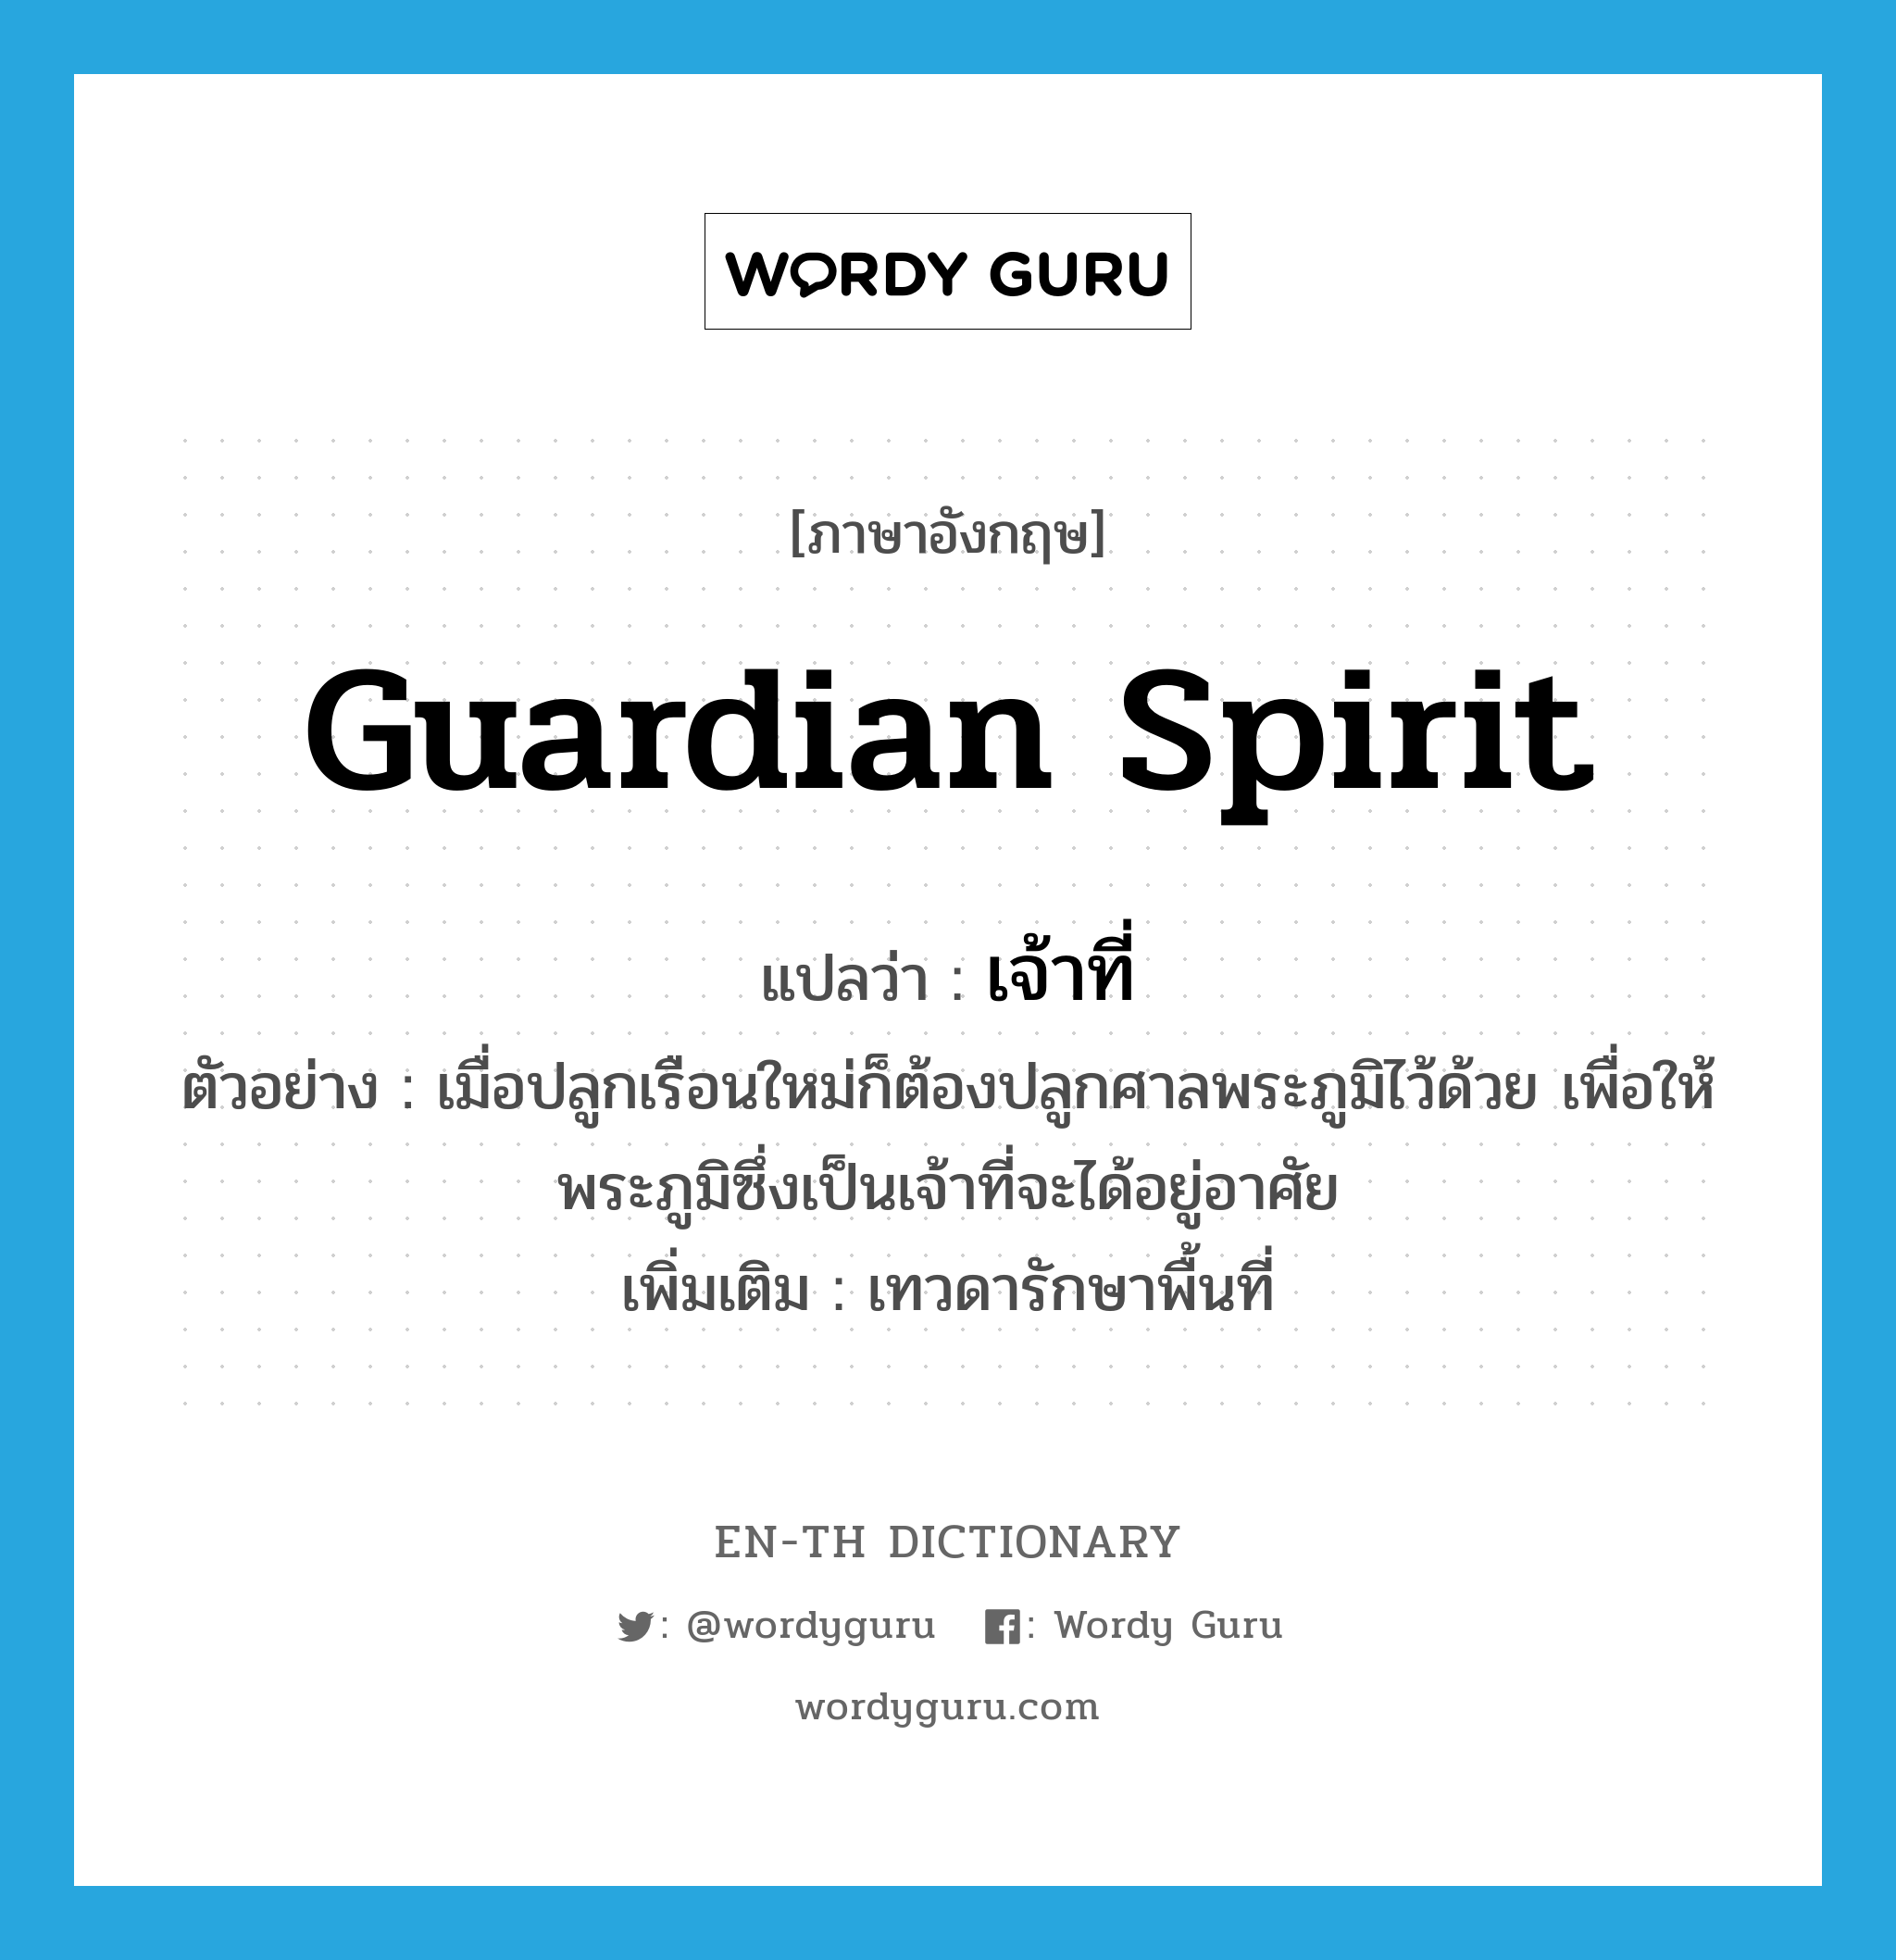 guardian spirit แปลว่า?, คำศัพท์ภาษาอังกฤษ guardian spirit แปลว่า เจ้าที่ ประเภท N ตัวอย่าง เมื่อปลูกเรือนใหม่ก็ต้องปลูกศาลพระภูมิไว้ด้วย เพื่อให้พระภูมิซึ่งเป็นเจ้าที่จะได้อยู่อาศัย เพิ่มเติม เทวดารักษาพื้นที่ หมวด N